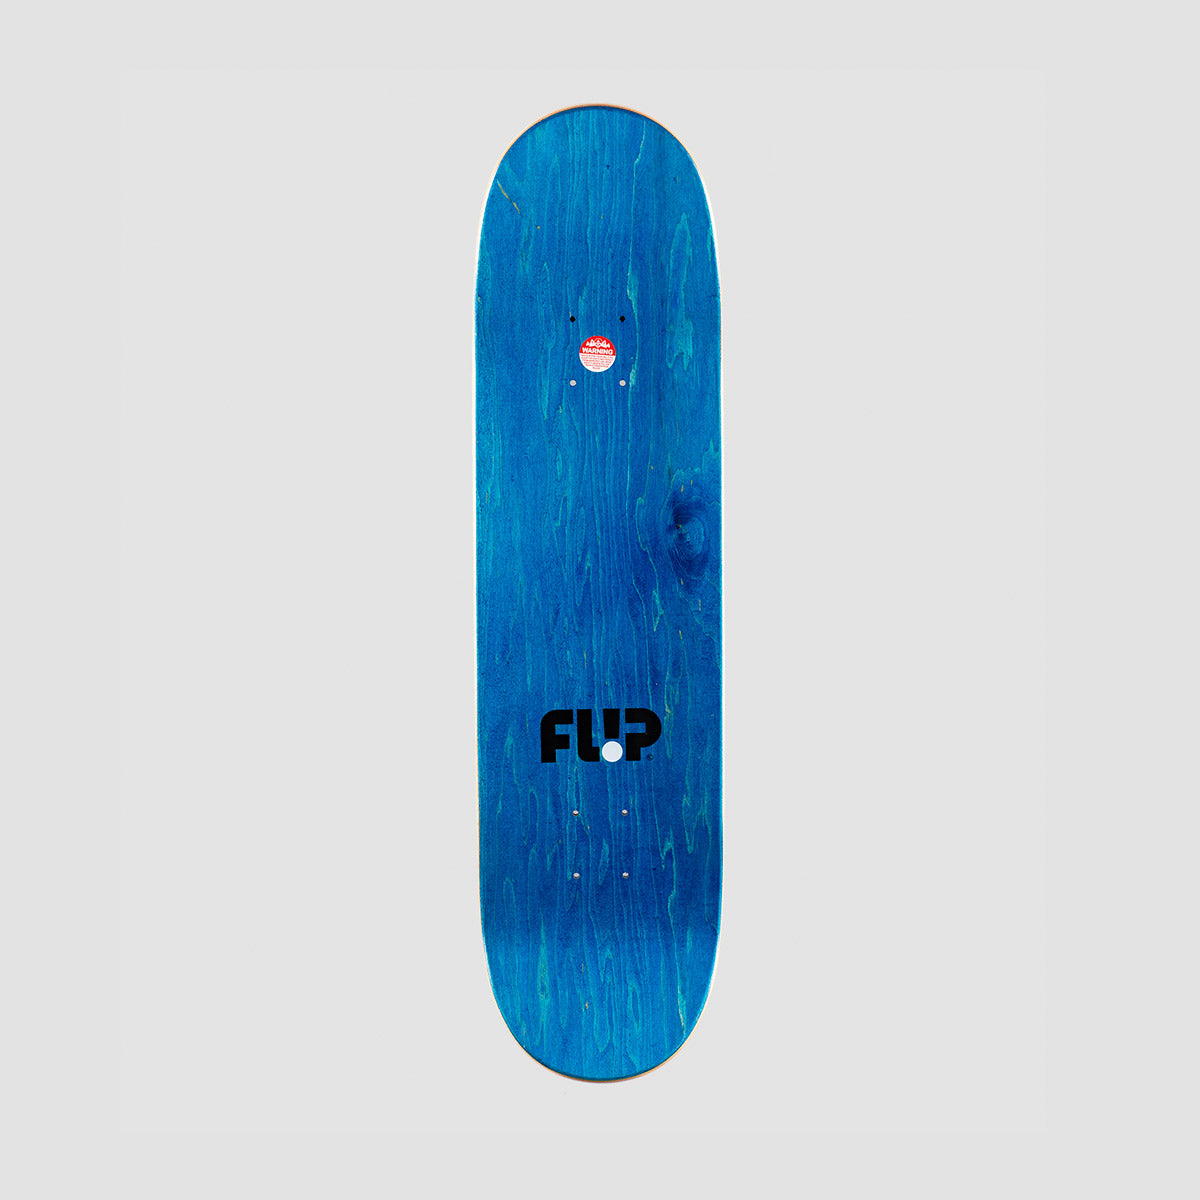 Flip Two Tone Alec Majerus Skateboard Deck - 8.25"